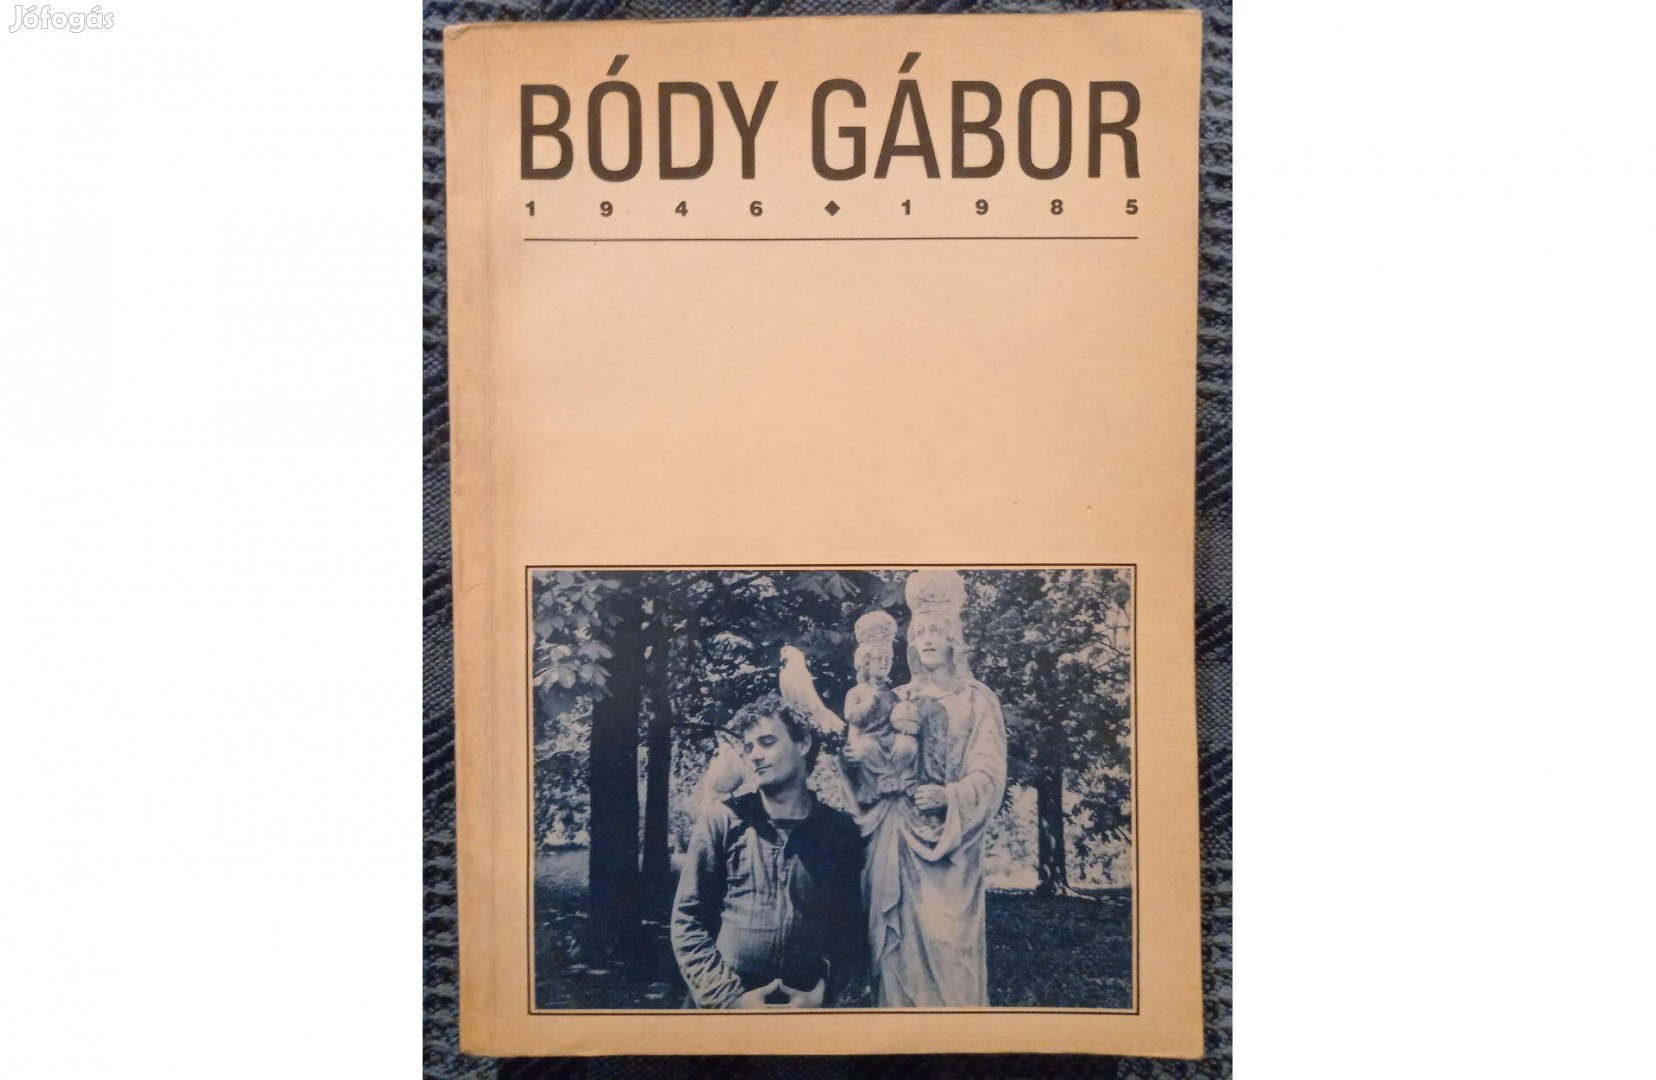 Bódy Gábor 1946-1985. című, magyar-angol nyelvű könyv eladó